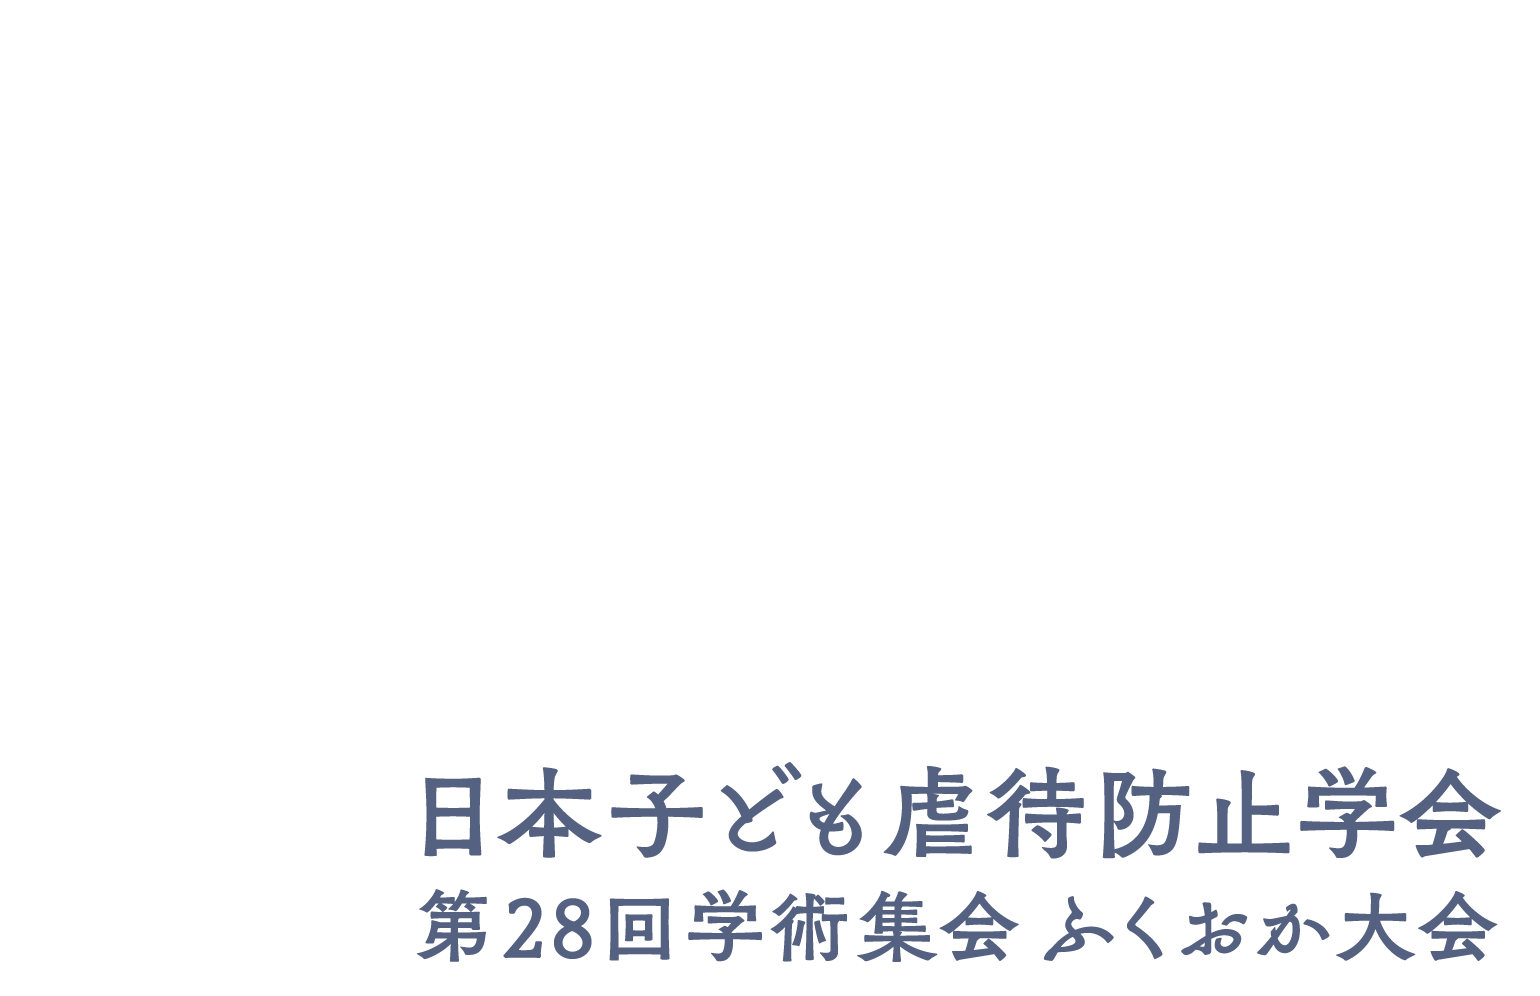 日本子ども虐待防止学会第28回学術集会ふくおか大会